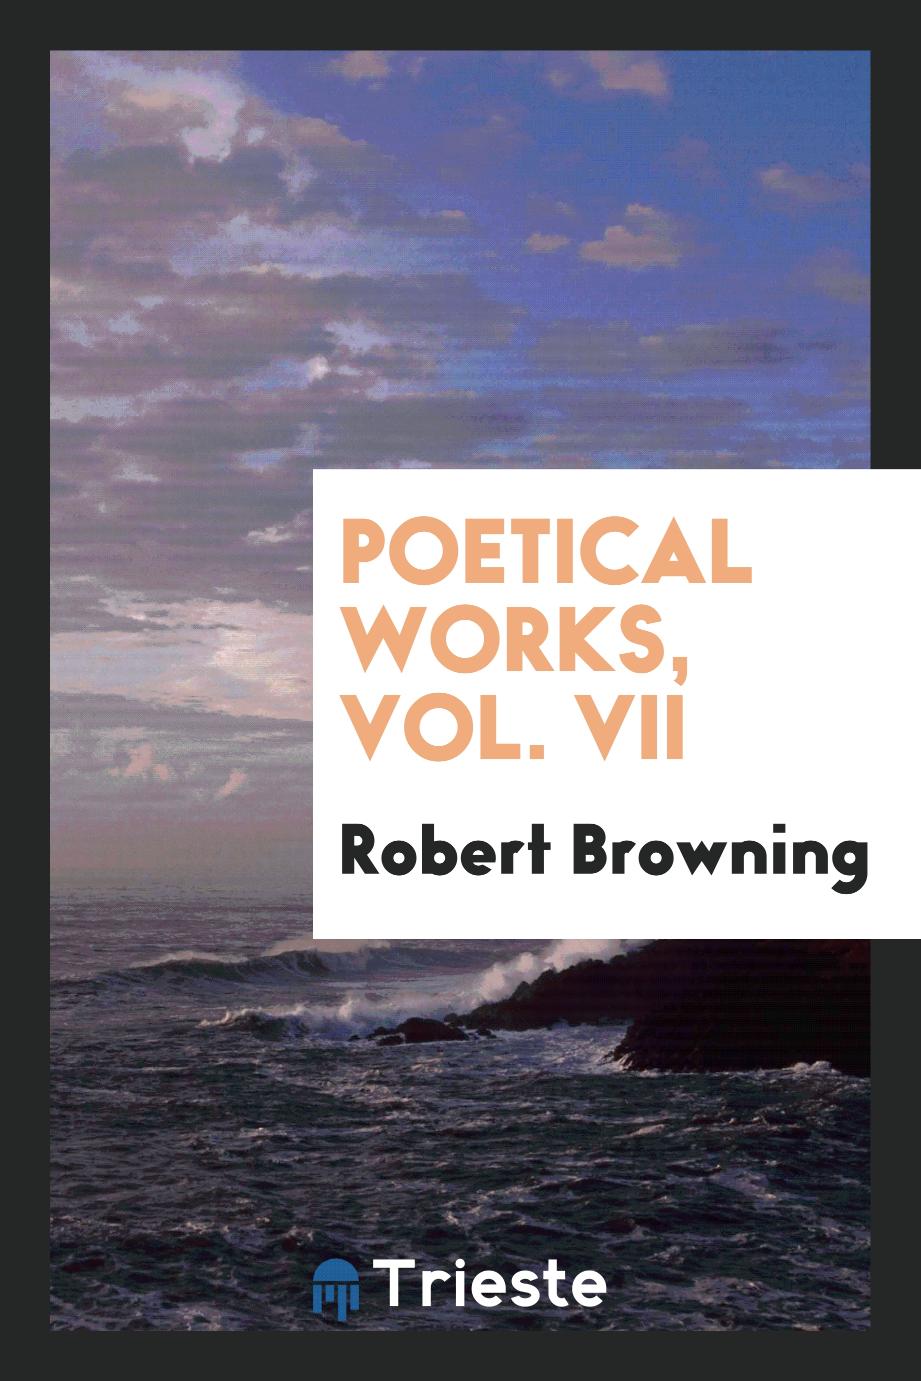 Poetical works, Vol. VII